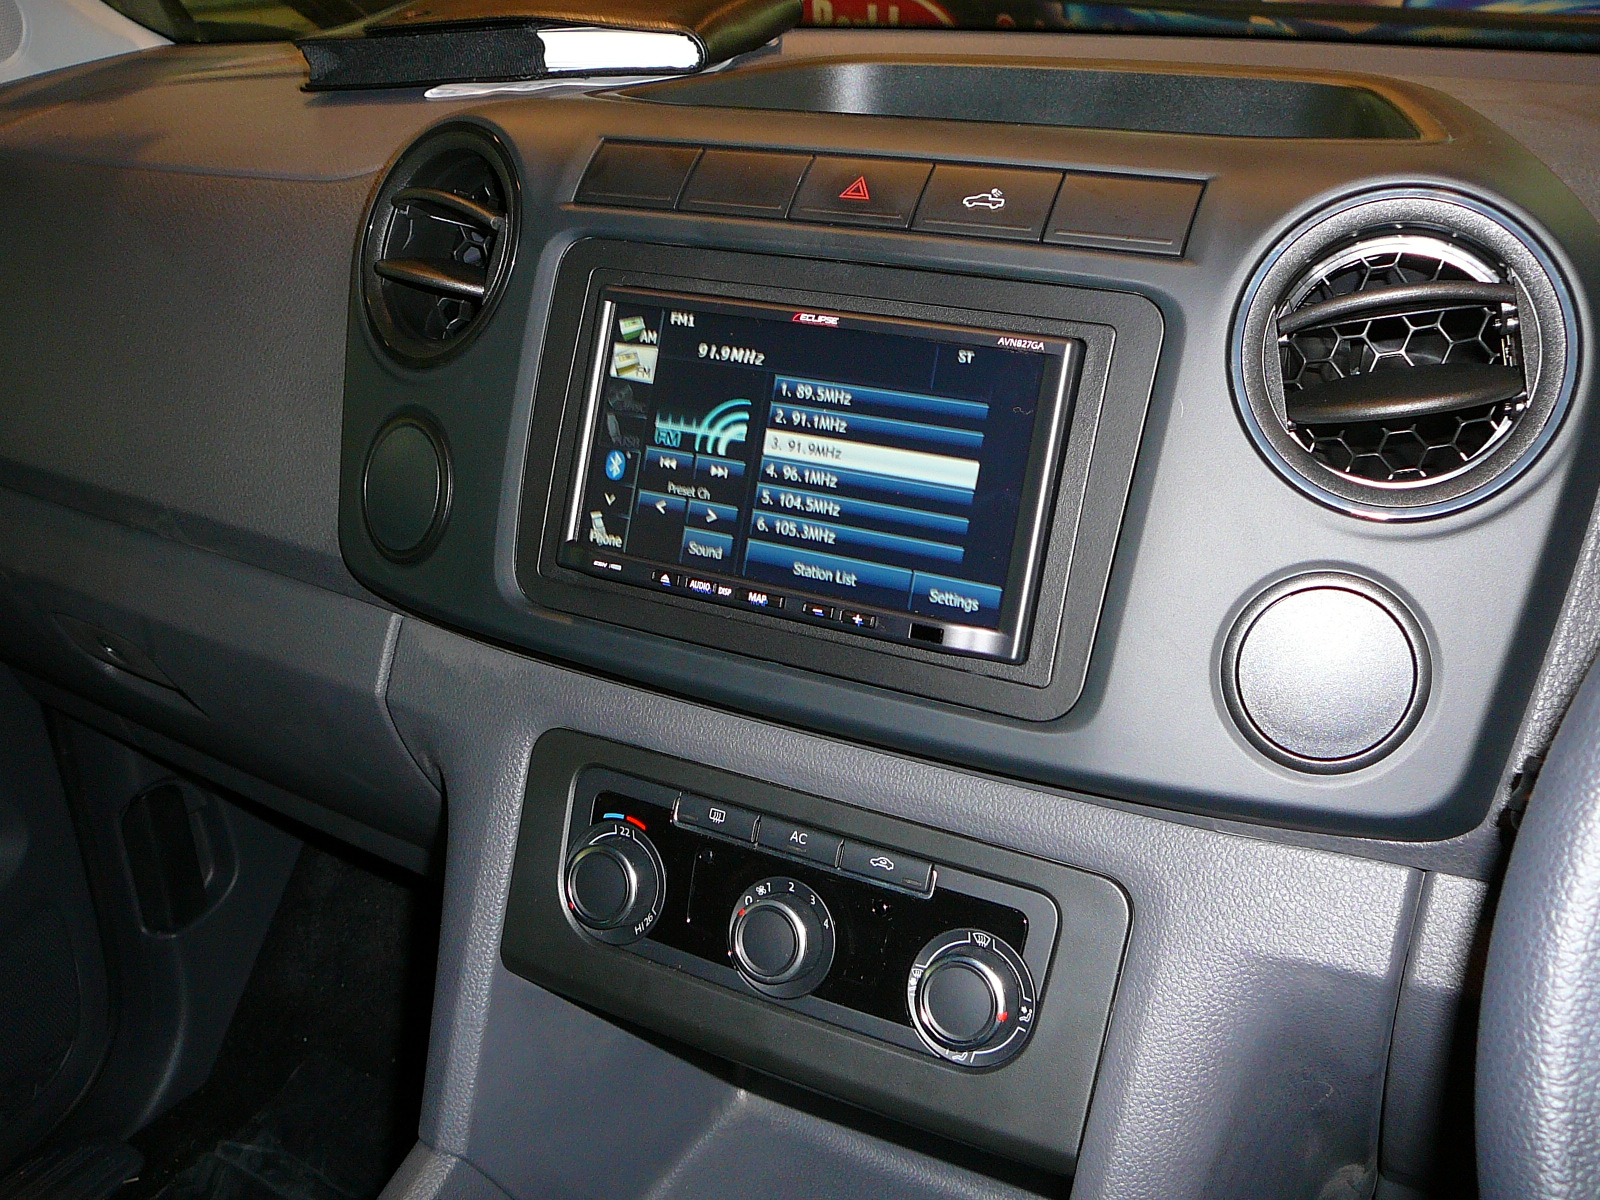 VW Amarok 2012, Eclipse Indash GPS Navigagtion System